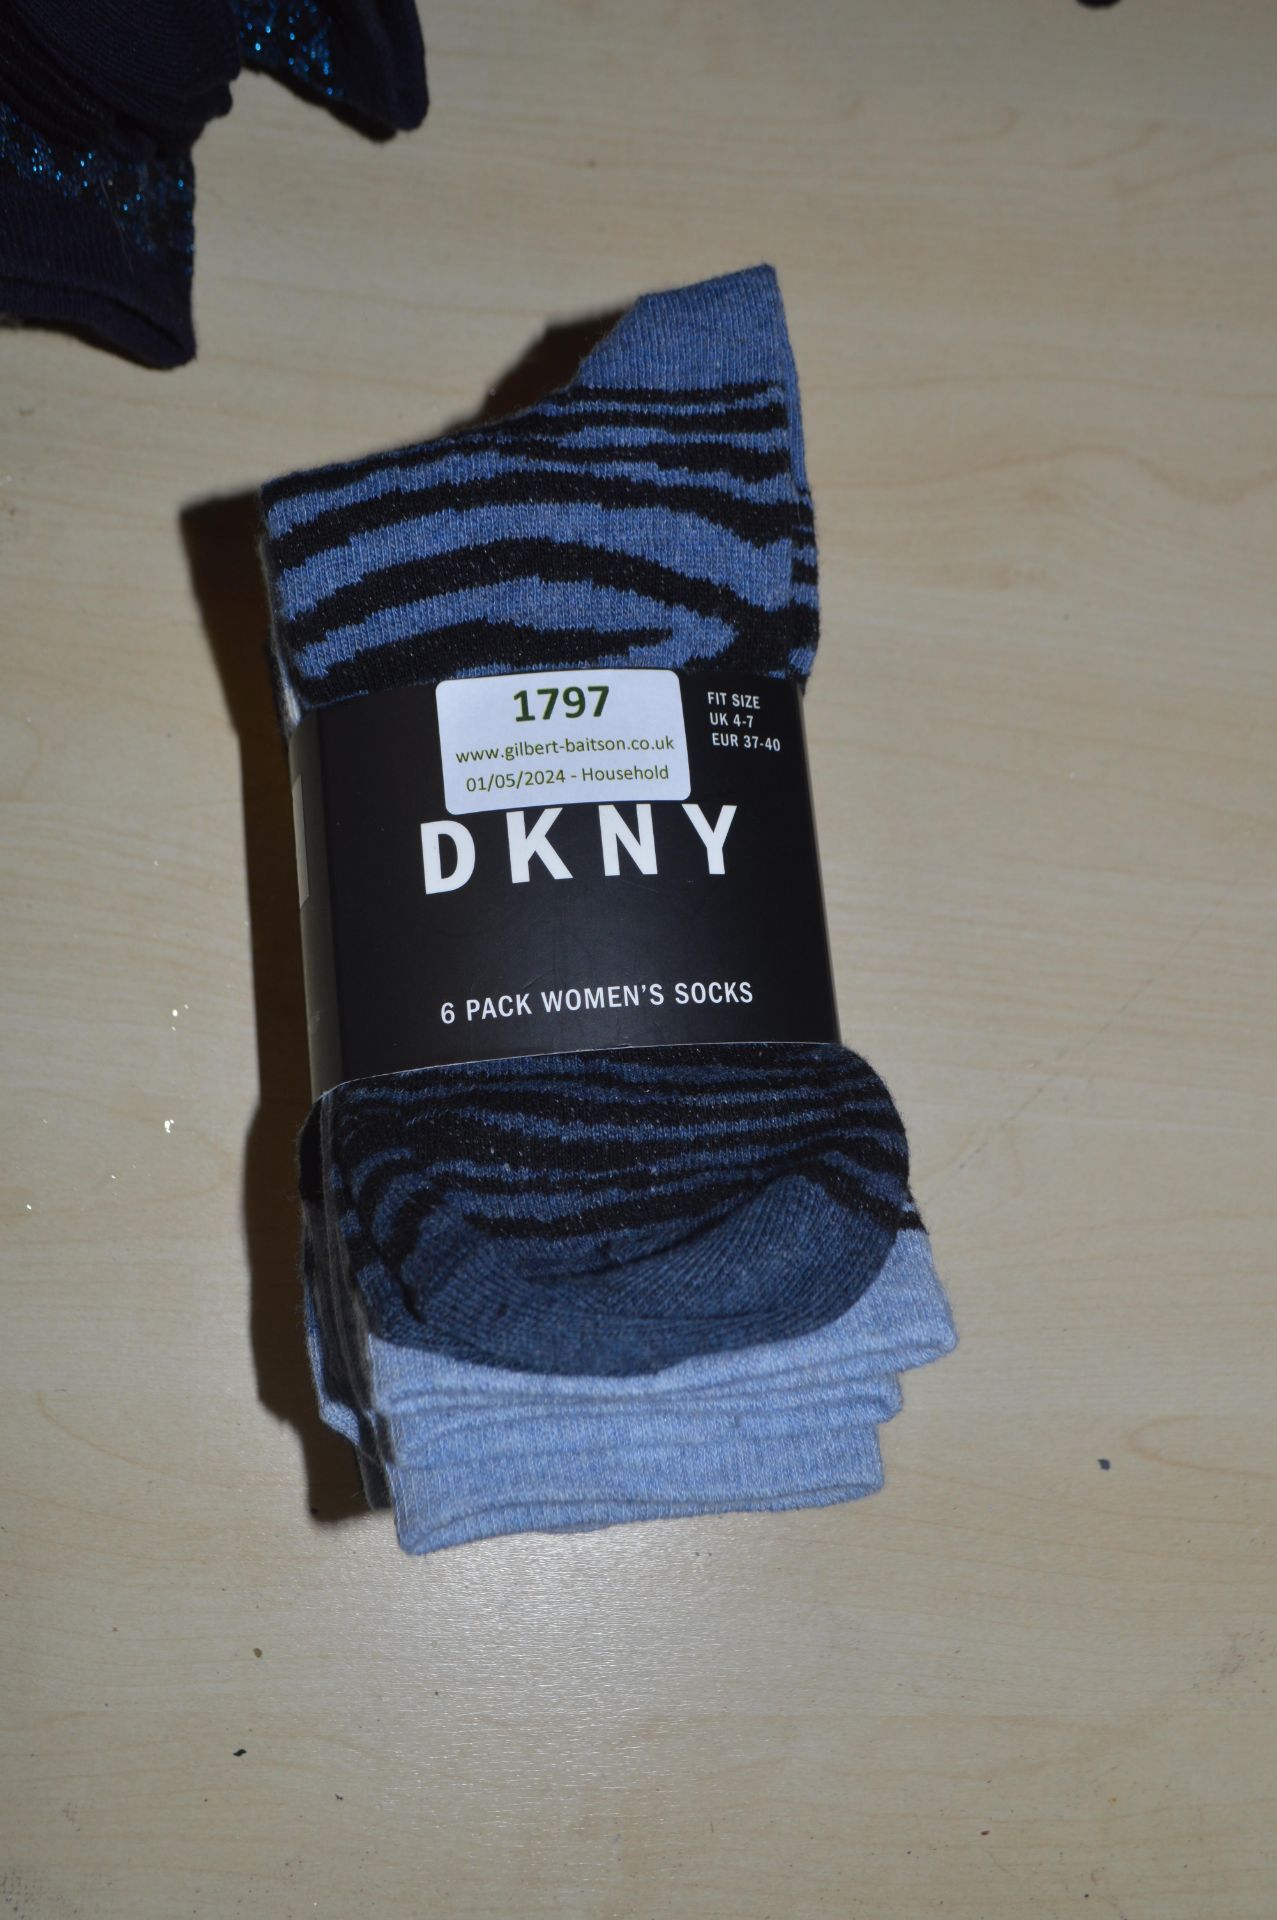 *Six Pairs of DKNY Lady’s Socks Size: 4-7